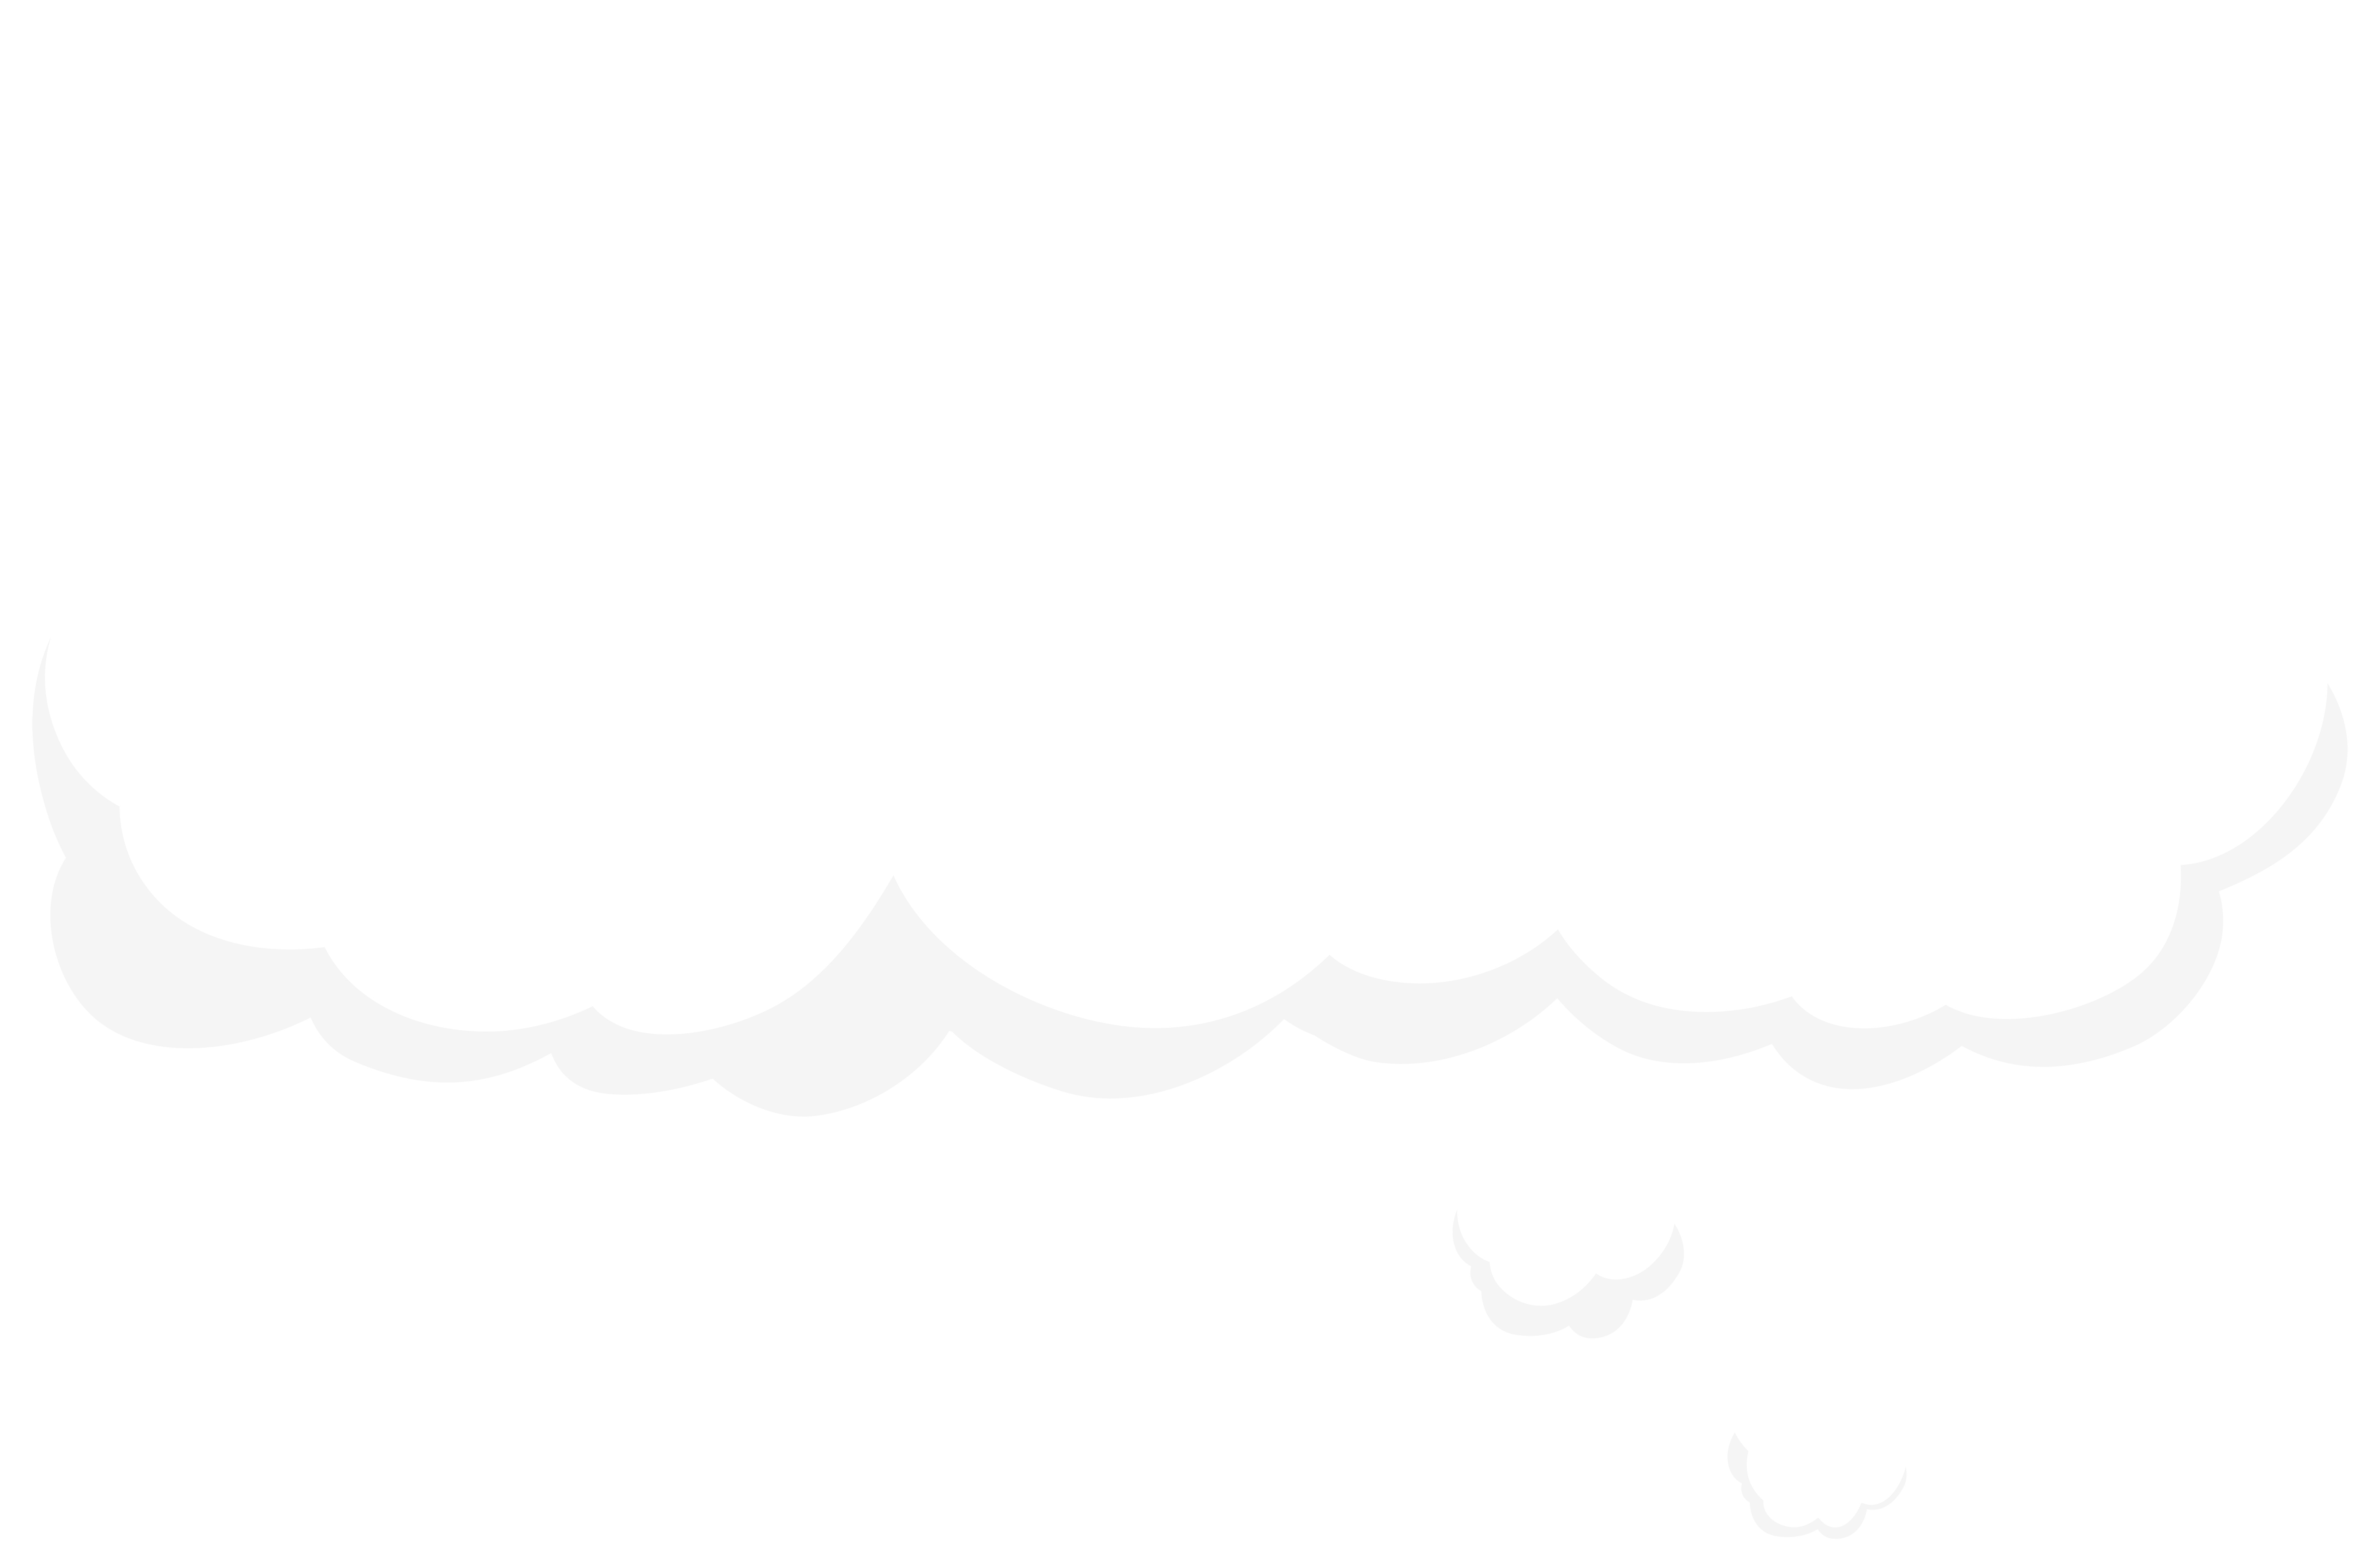 Bubble Speech Cloud PNG Clip Art Image